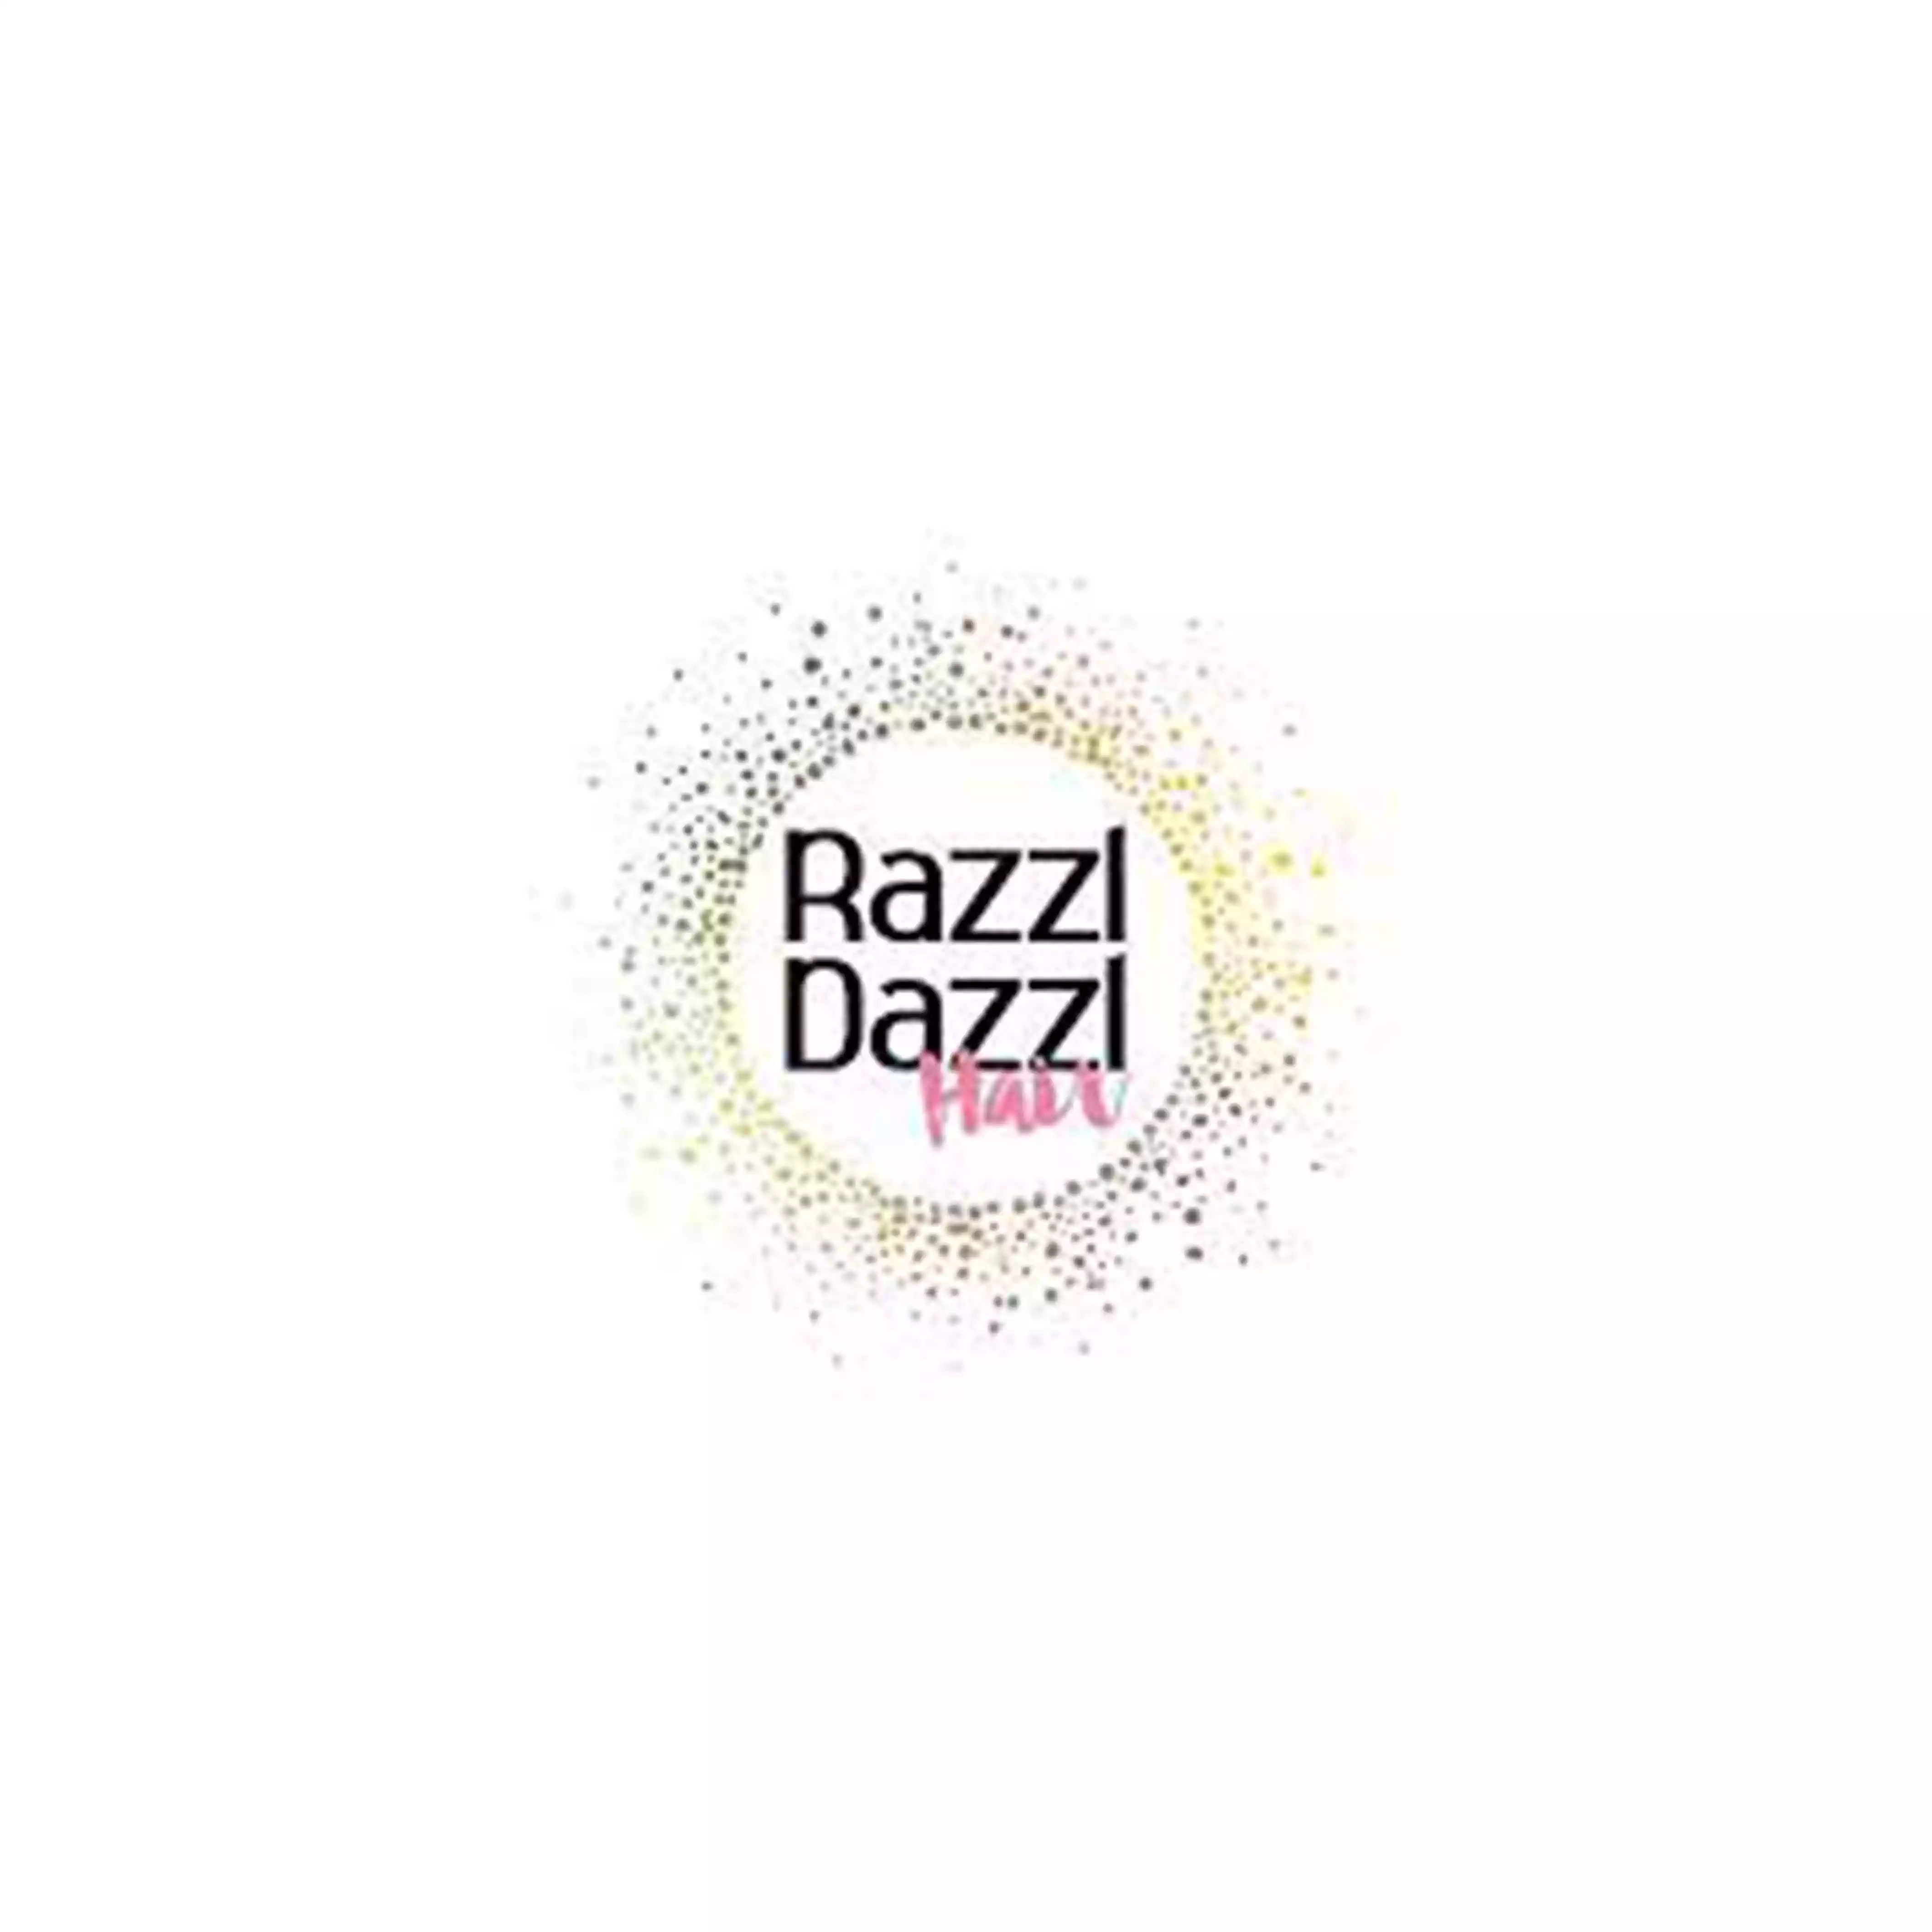 Razzl Dazzl coupon codes